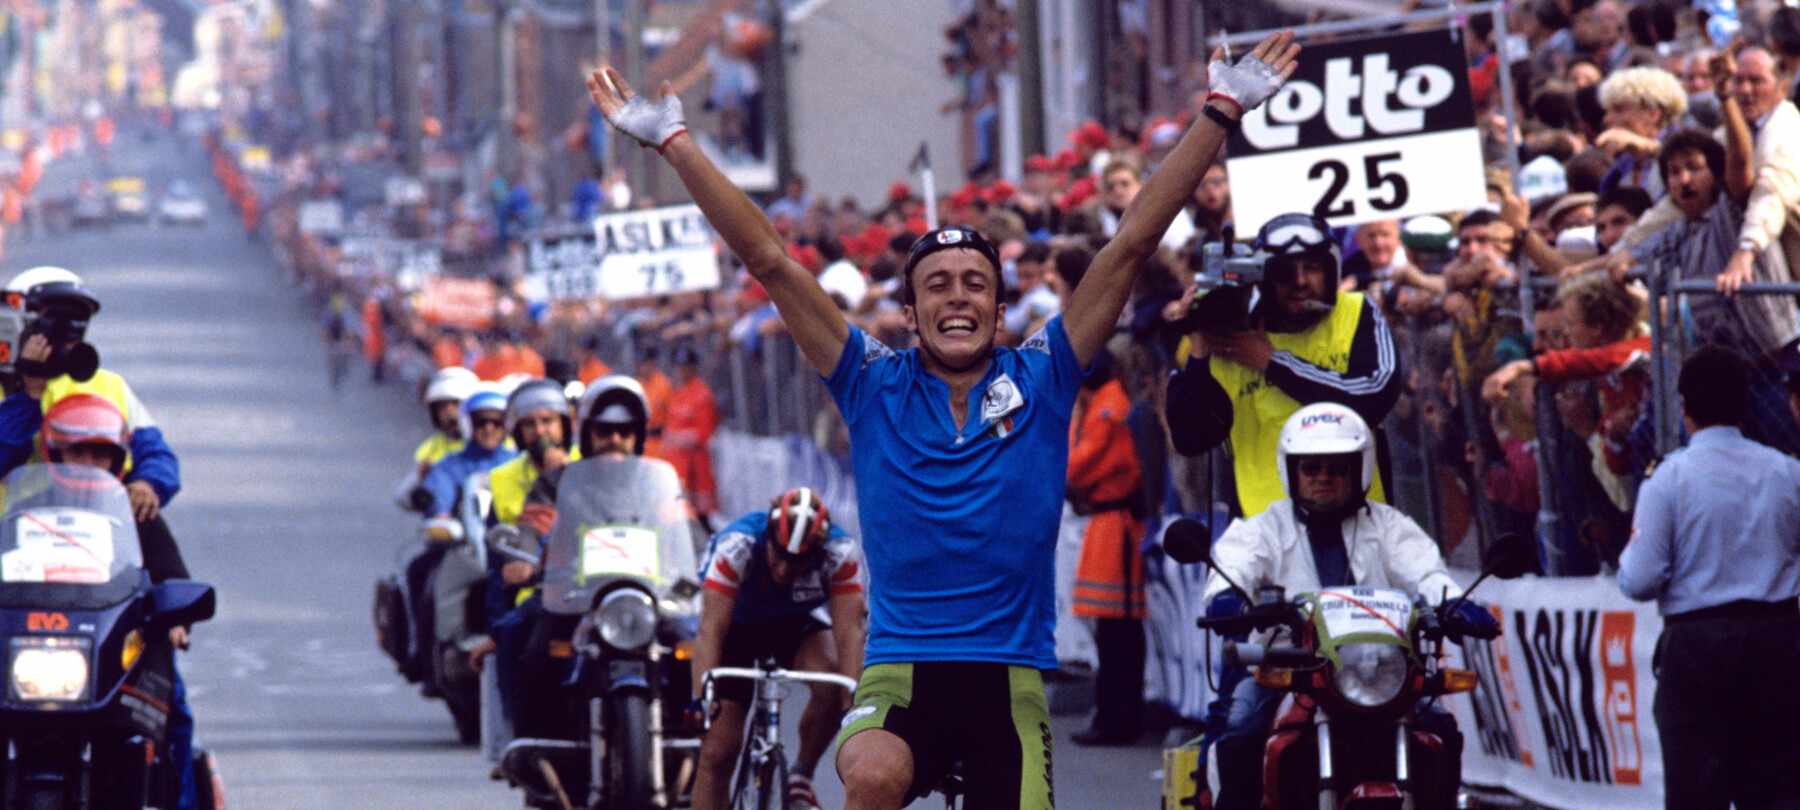 Trentino: země cyklistických šampionů